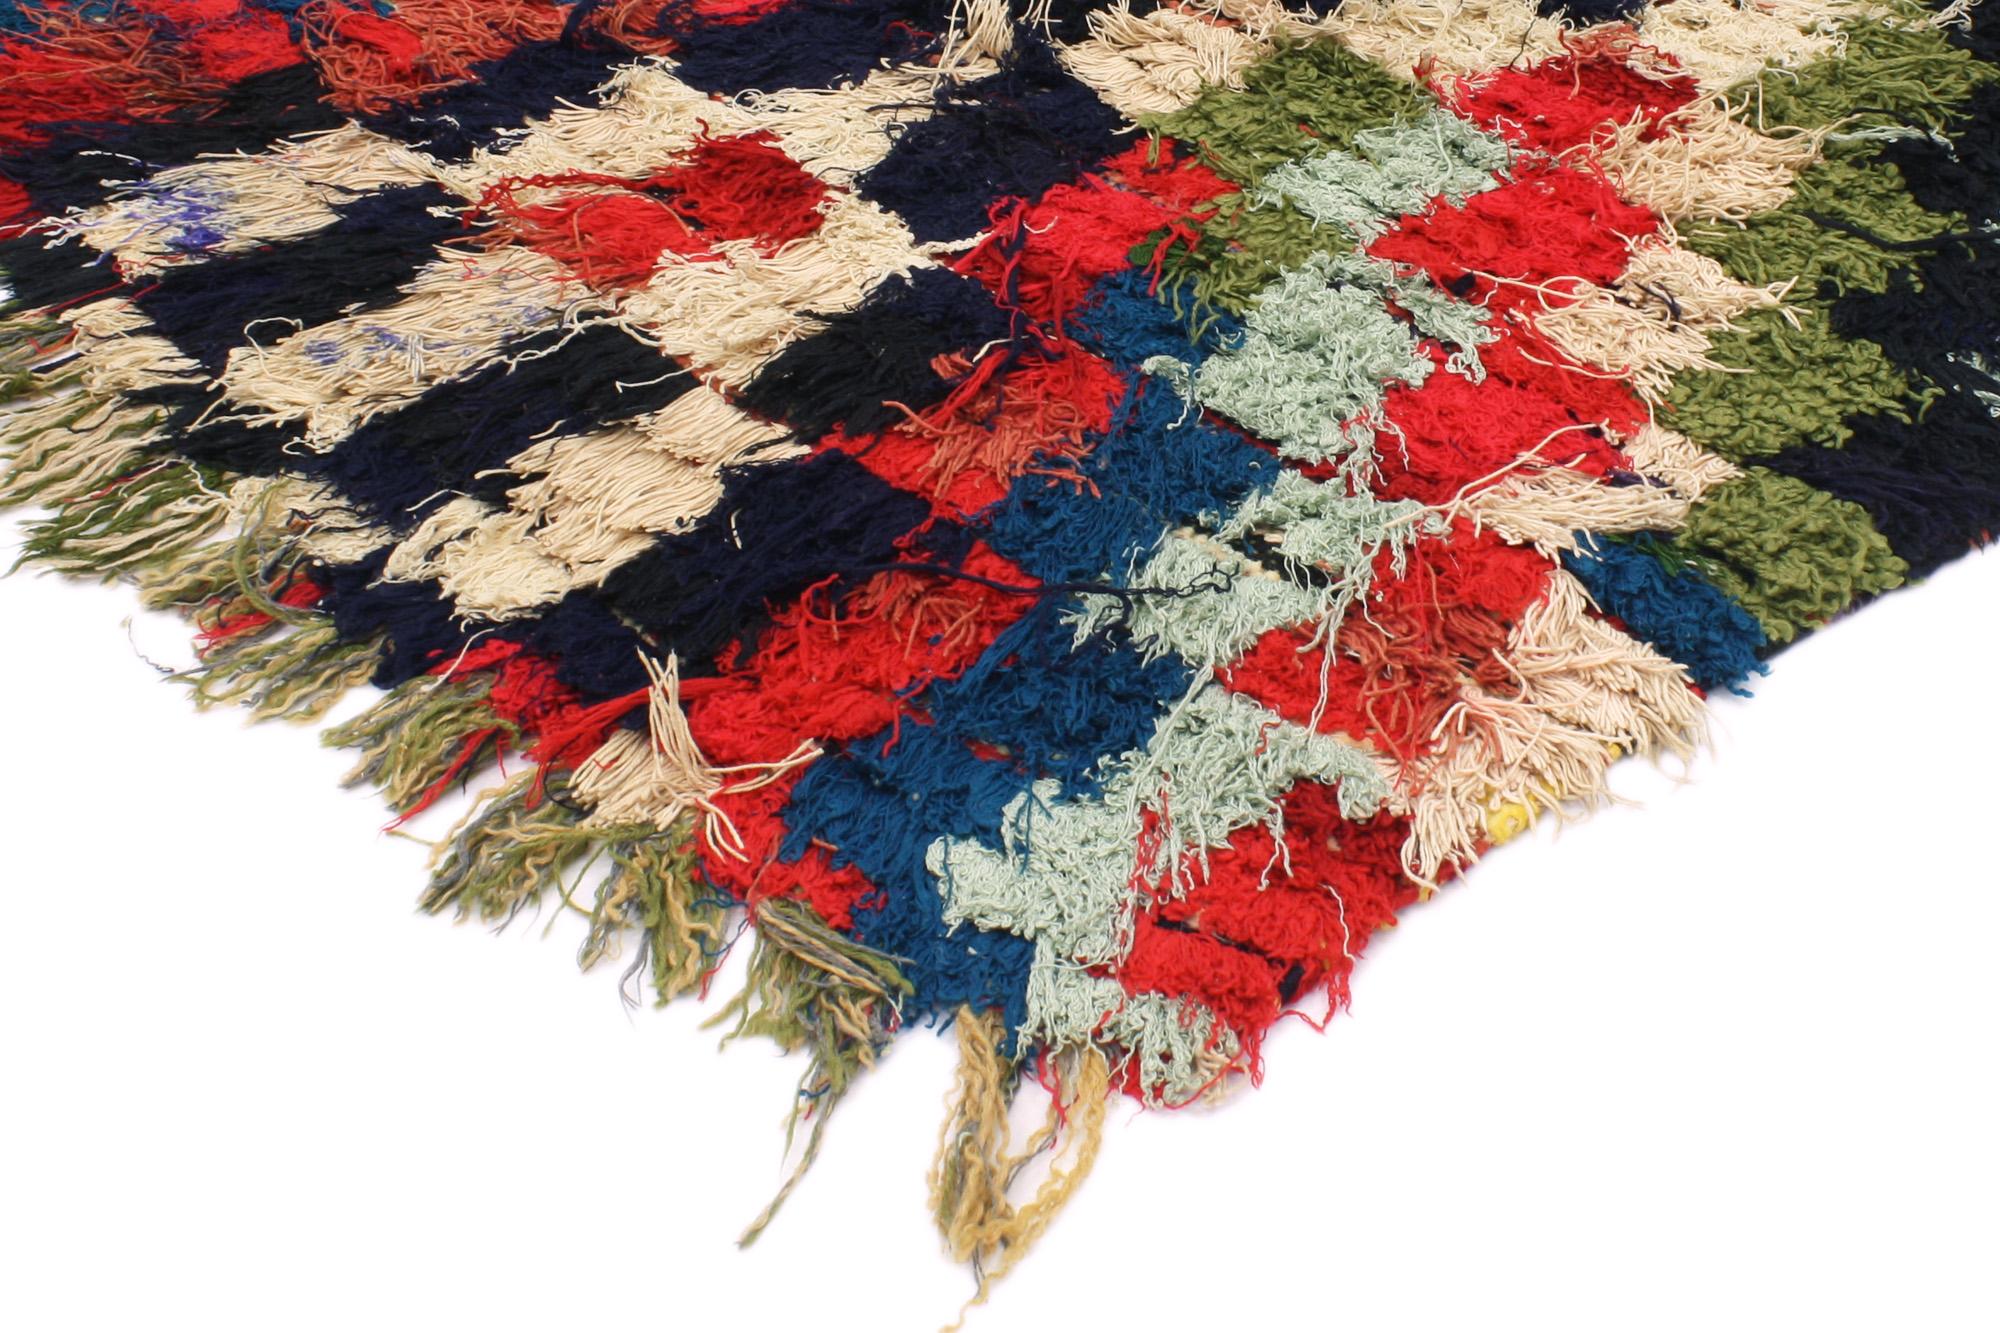 20381 Vintage Checkered Moroccan Rag Rug 03'00 x 08'03. Boucherouite-Teppiche stehen für eine geschätzte Tradition marokkanischer Handwerkskunst, die von Berberfrauen aus recycelten Textilien wie Baumwolle und Wolle handgewebt wird. Diese Teppiche